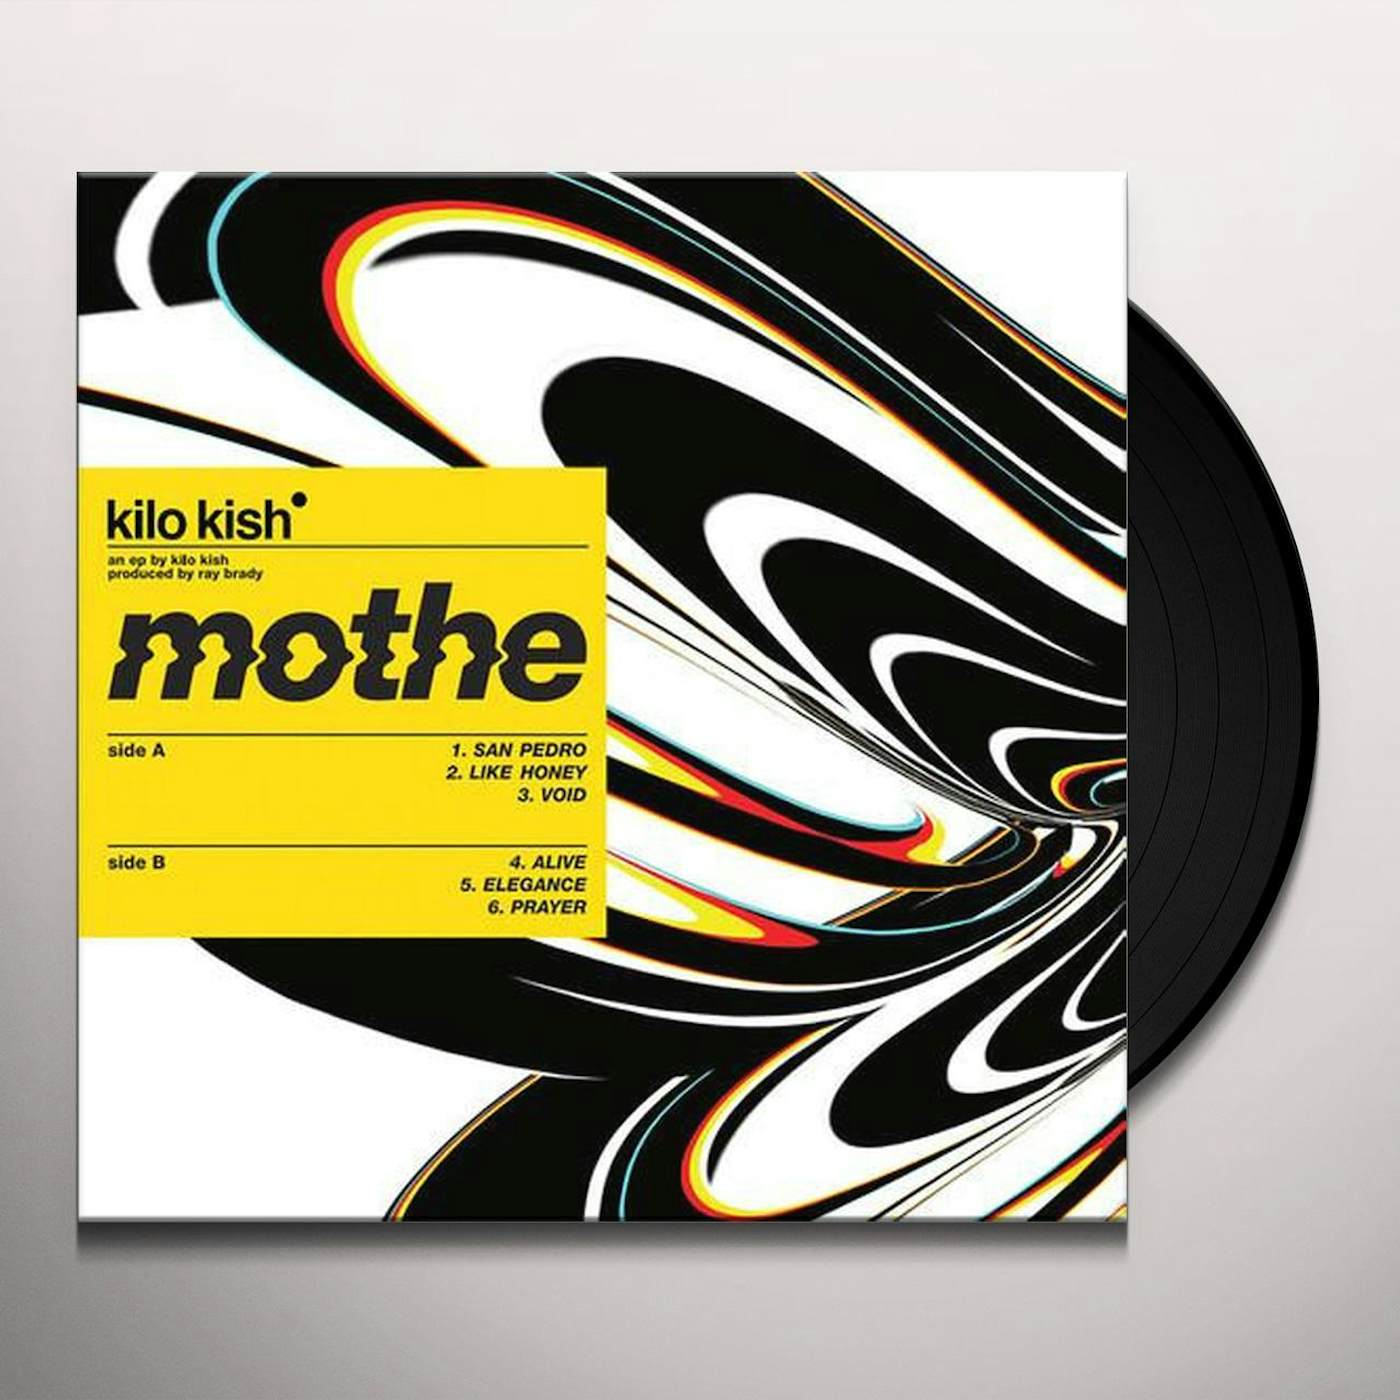 Kilo Kish mothe Vinyl Record